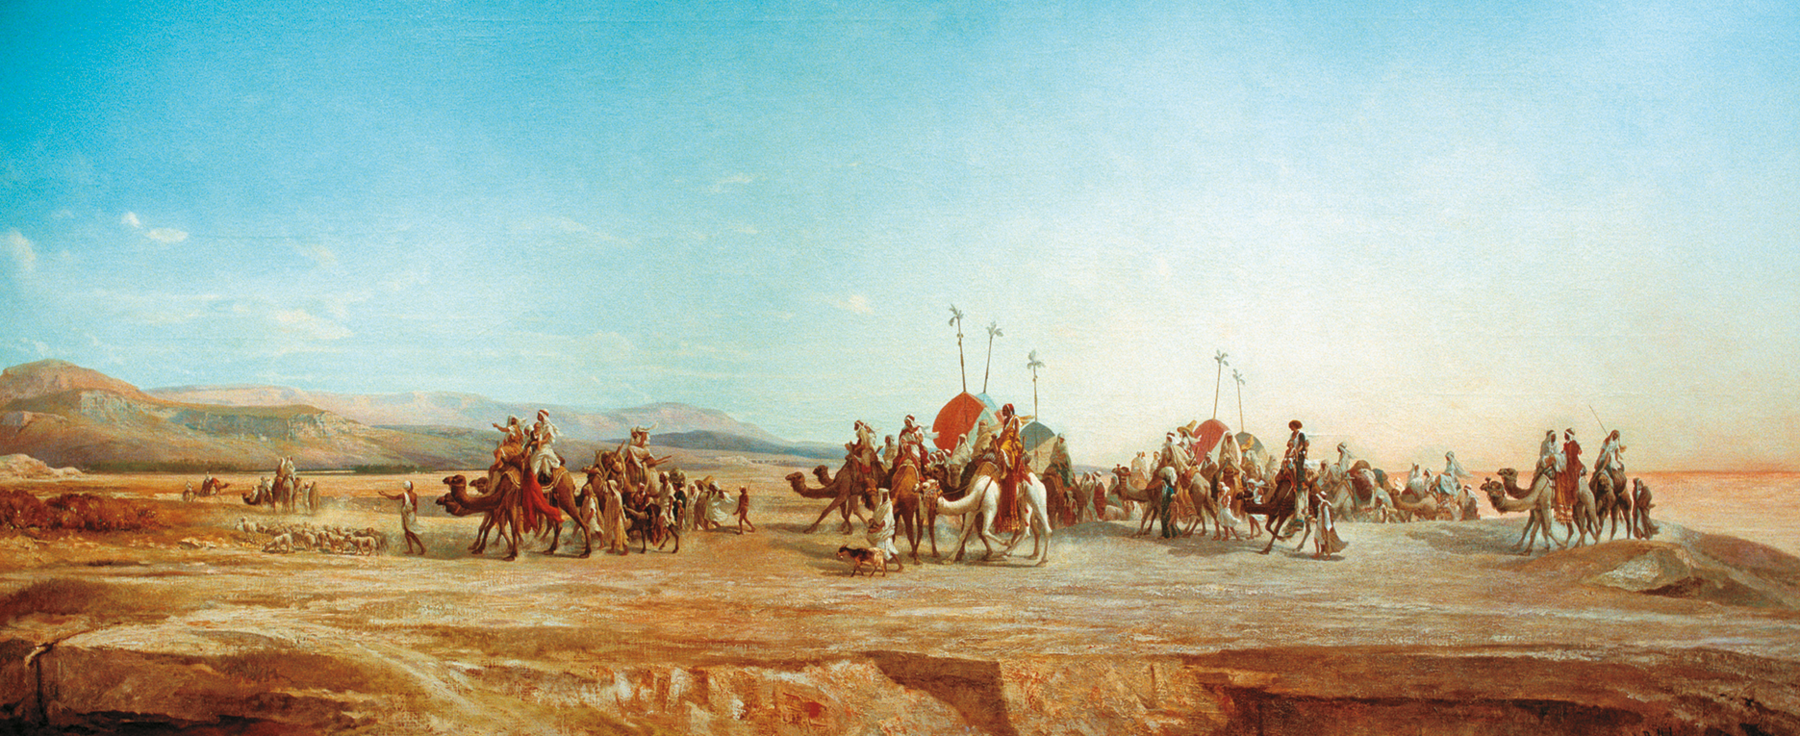 Pintura. Um grupo de pessoas, algumas em pé e outras montadas em camelos, transportam alguns objetos. Ao fundo, paisagem desértica com algumas palmeiras e dunas de areia.